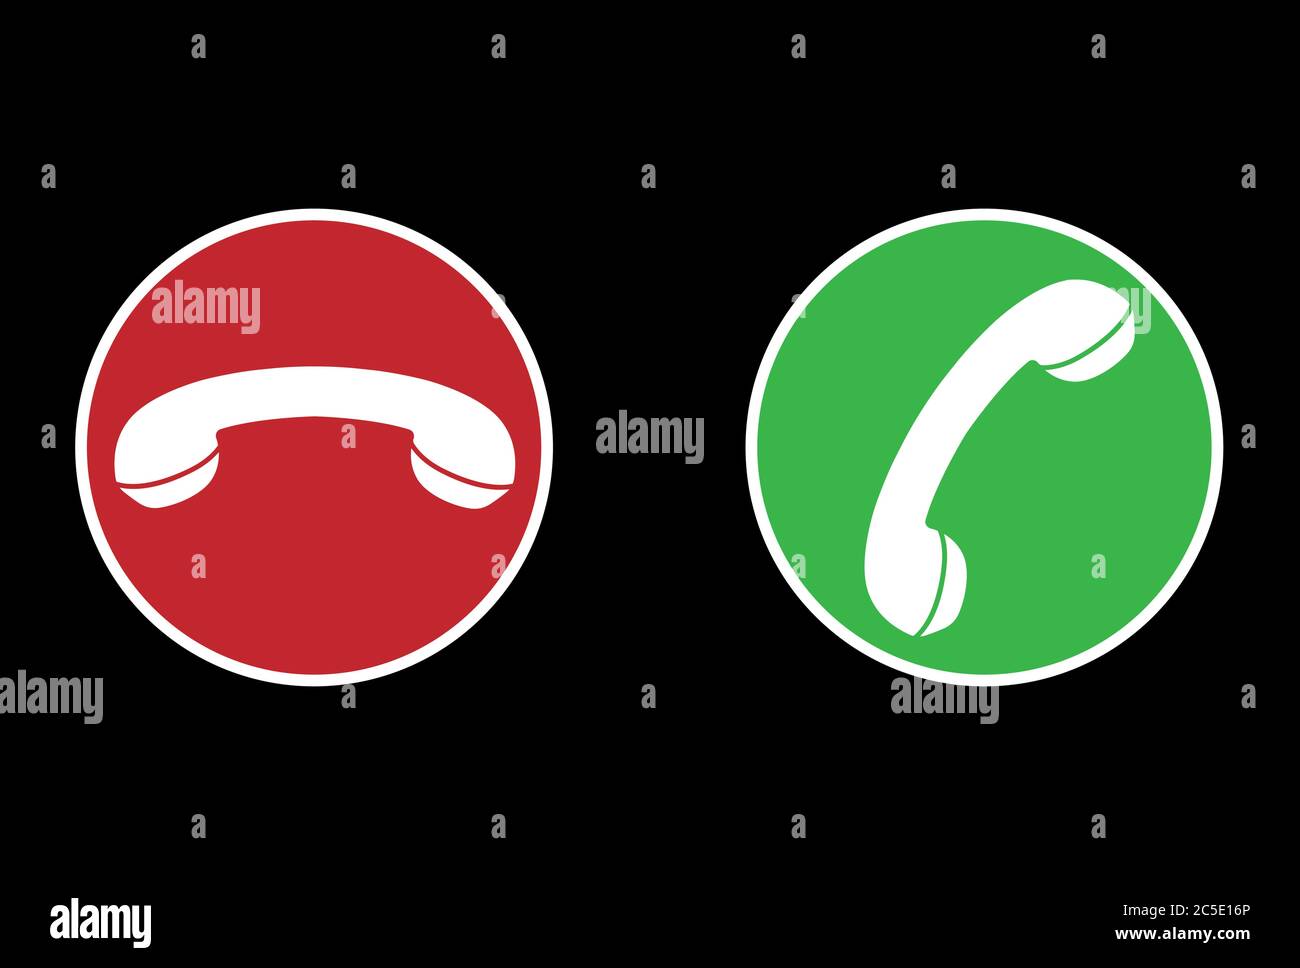 icone di risposta o rifiuto della chiamata, icone circolari rosse e verdi con icona del ricevitore Illustrazione Vettoriale